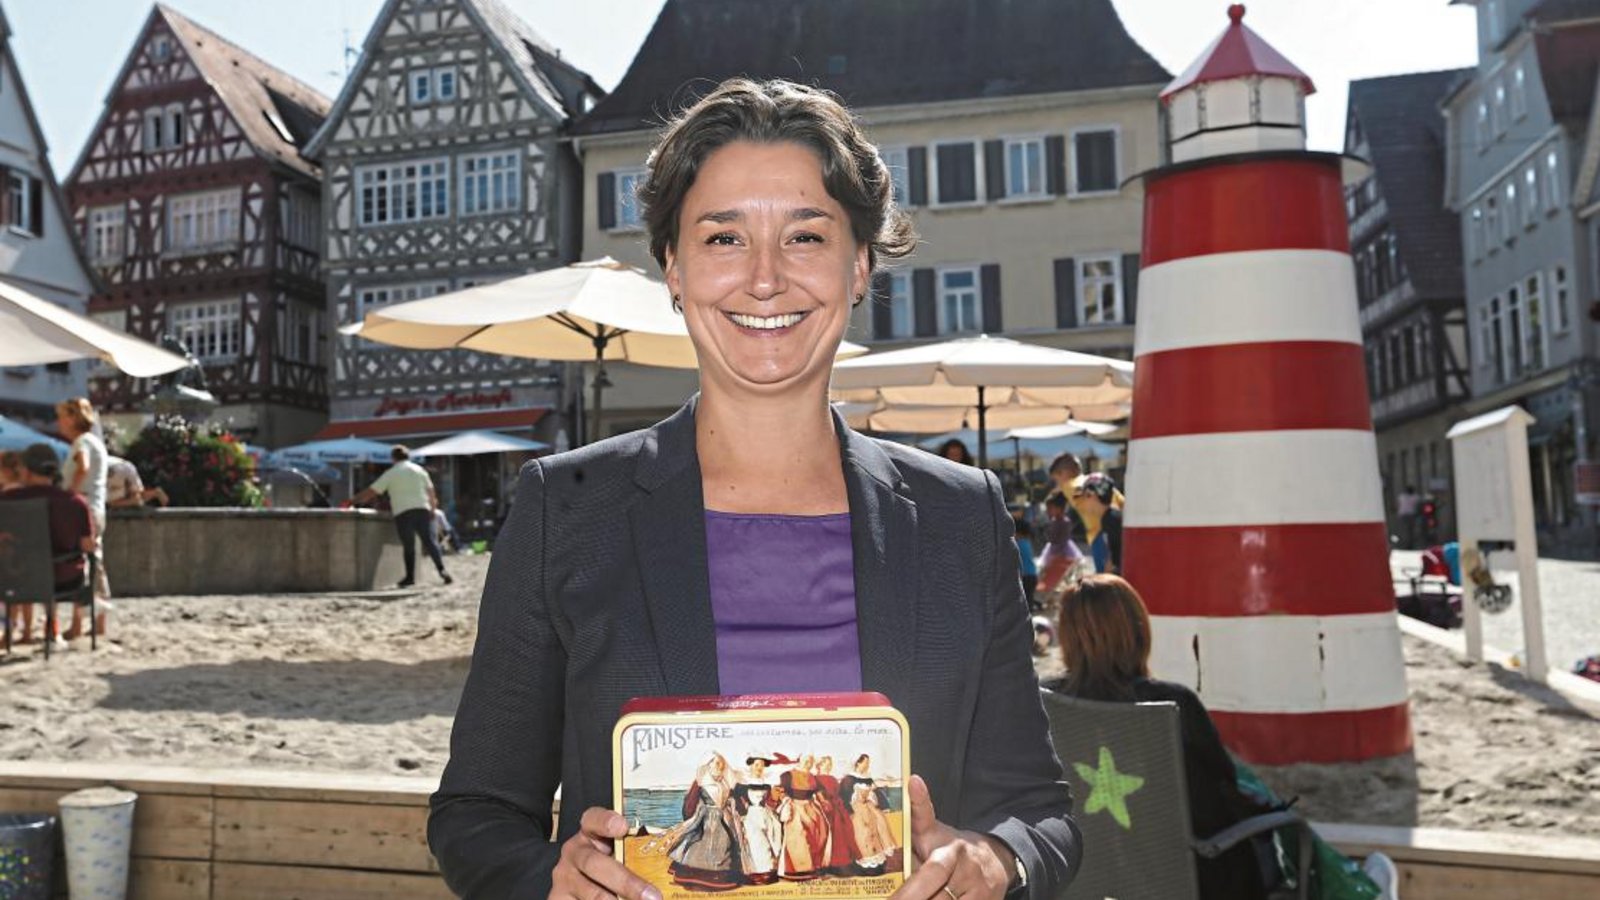 Erinnerung an den Urlaub in der Bretagne: Sandra Detzer kommt mit einer bunt gestalteten Keksdose zum Vaihinger Strandleben. Foto: Küppers